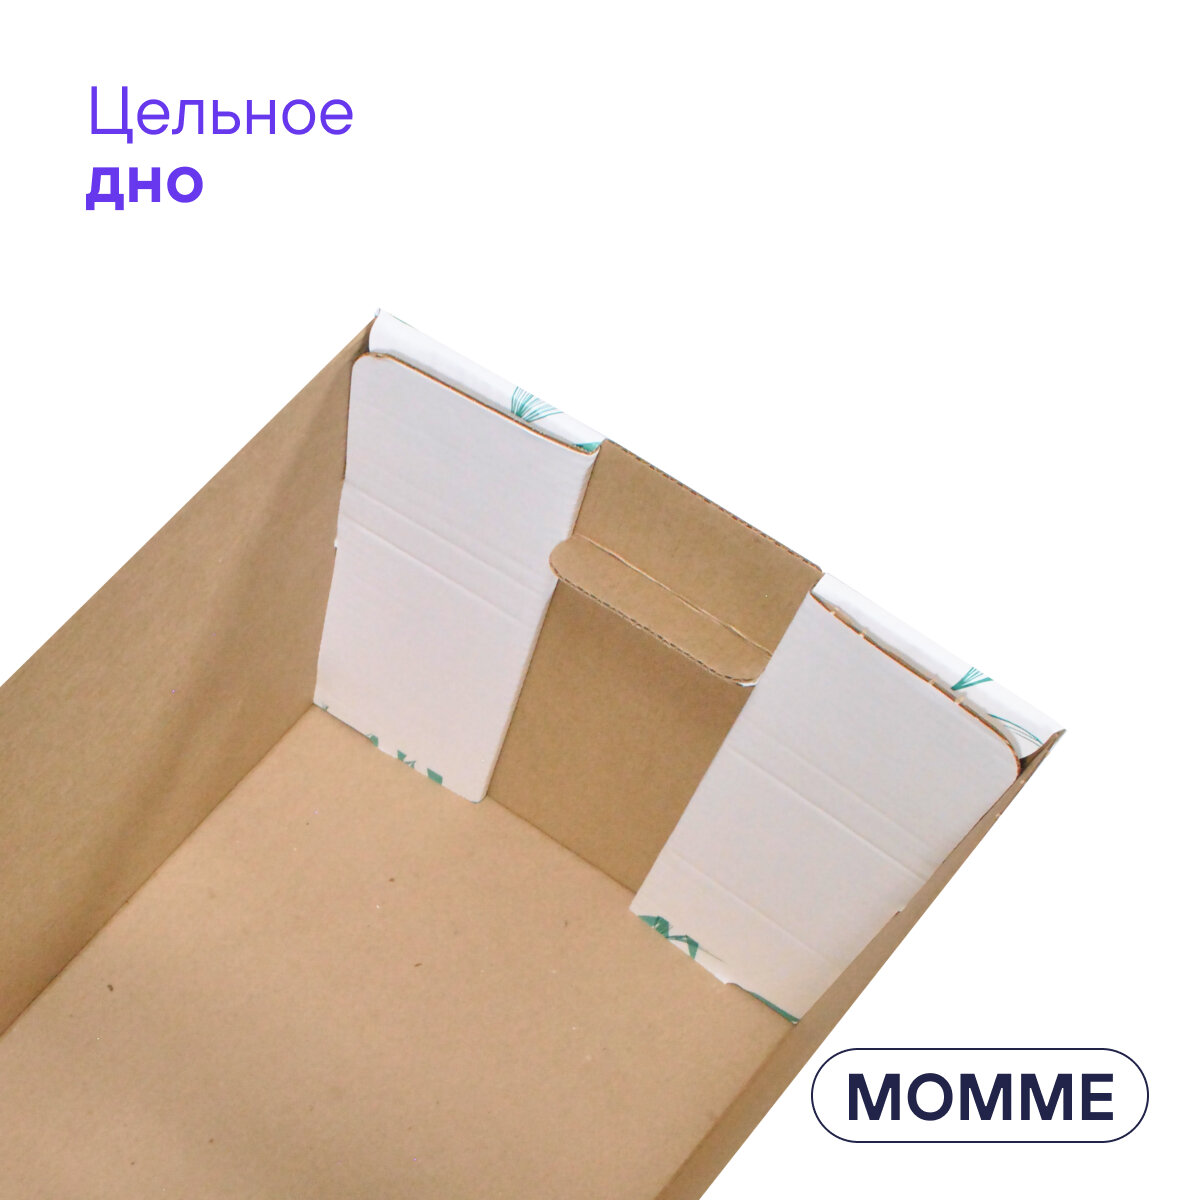 Коробка для хранения вещей и игрушек BOXY момме 38х33х30 см, зеленый короб с белой крышкой, гофрокартон, в упаковке 4 шт